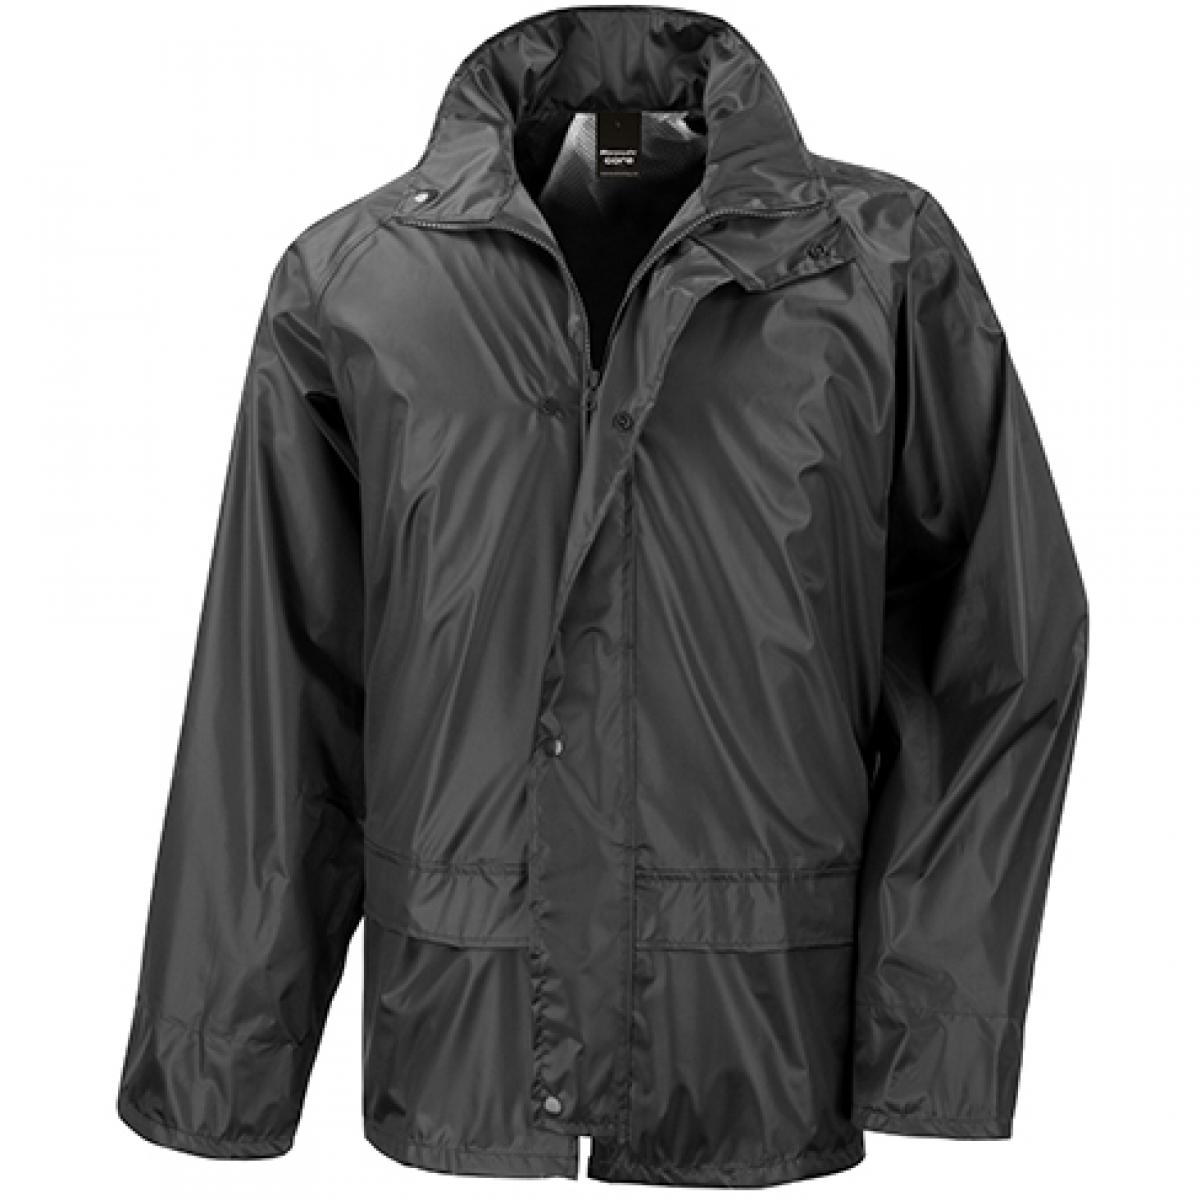 Hersteller: Result Core Herstellernummer: R227X Artikelbezeichnung: Herren Waterproof Over Jacket Farbe: Black